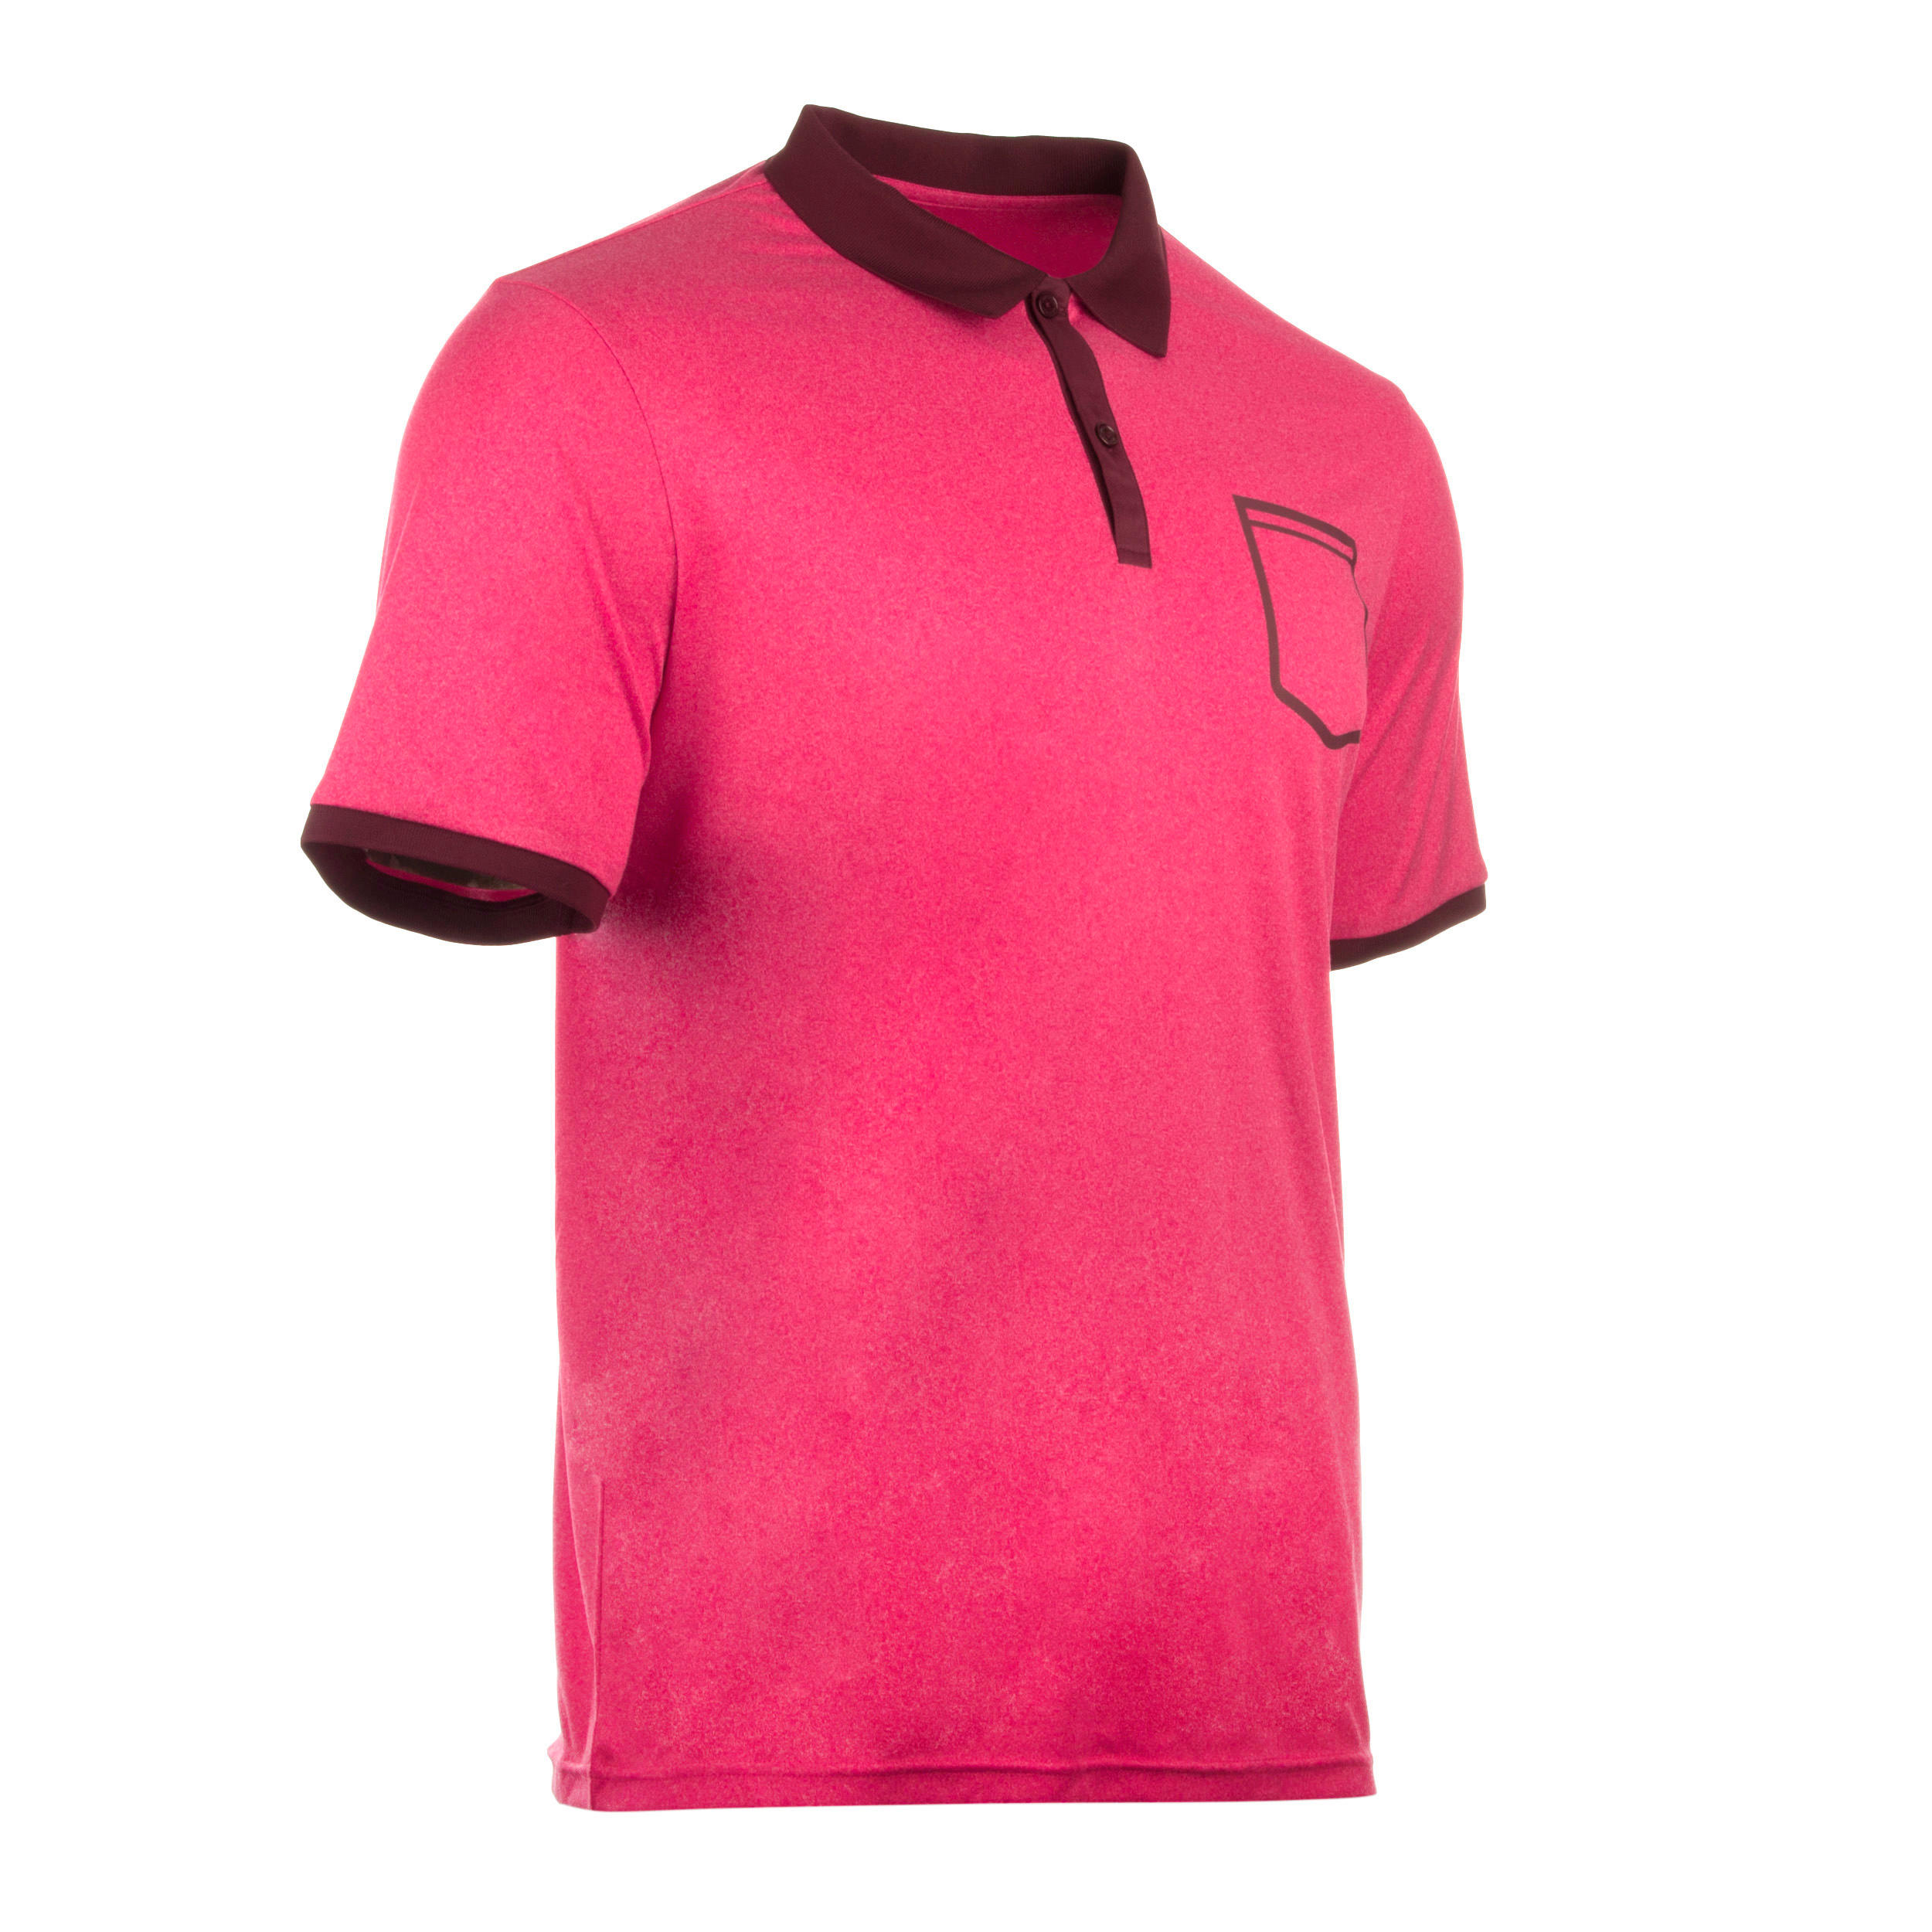 ARTENGO Soft Pocket Padel Tennis Badminton Squash Table Tennis Polo Shirt - Pink